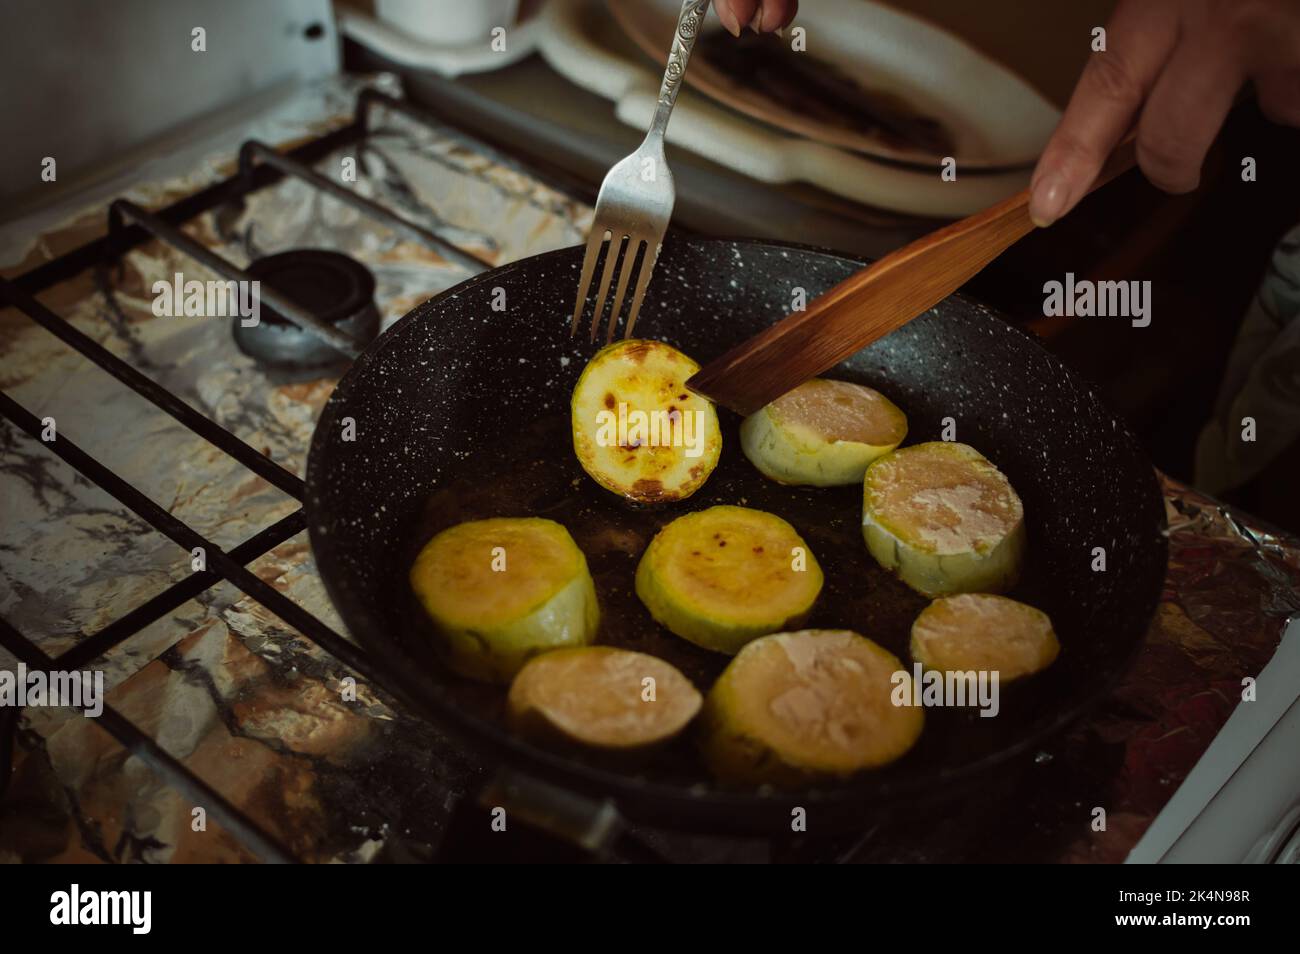 Le mani girano le zucchine nella farina nella padella sulla stufa a gas Foto Stock